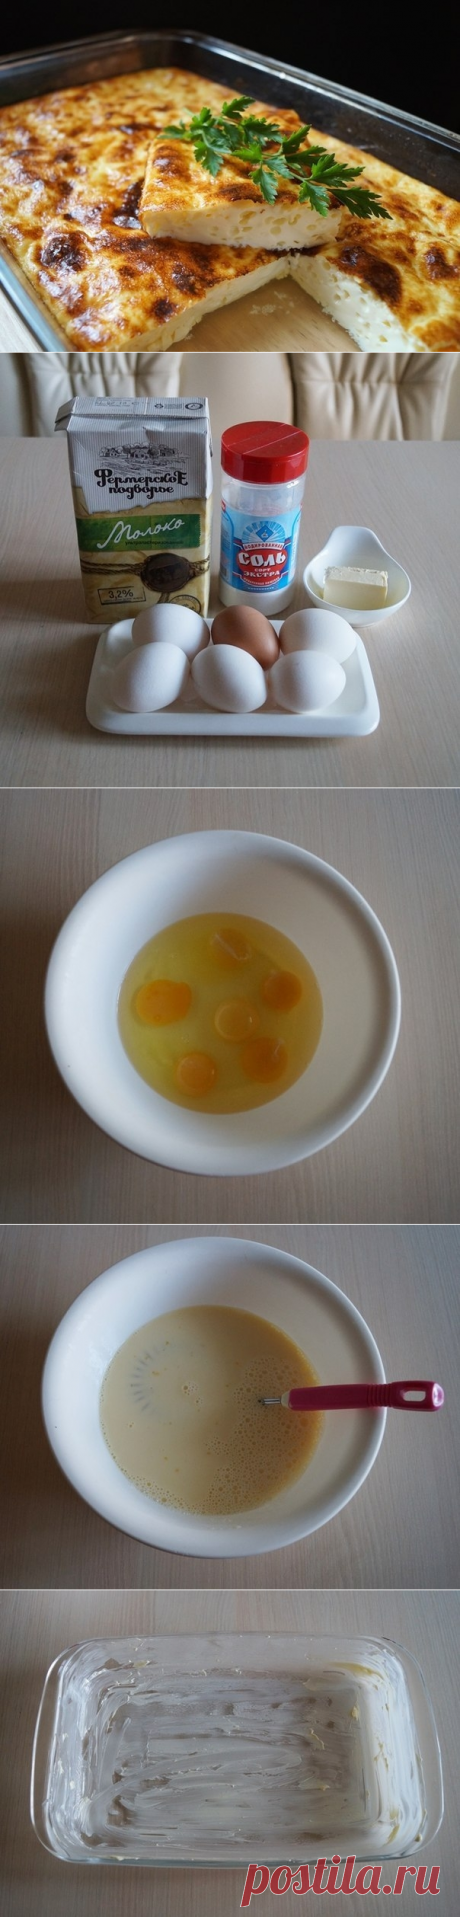 Как приготовить омлет как в детстве. - рецепт, ингредиенты и фотографии